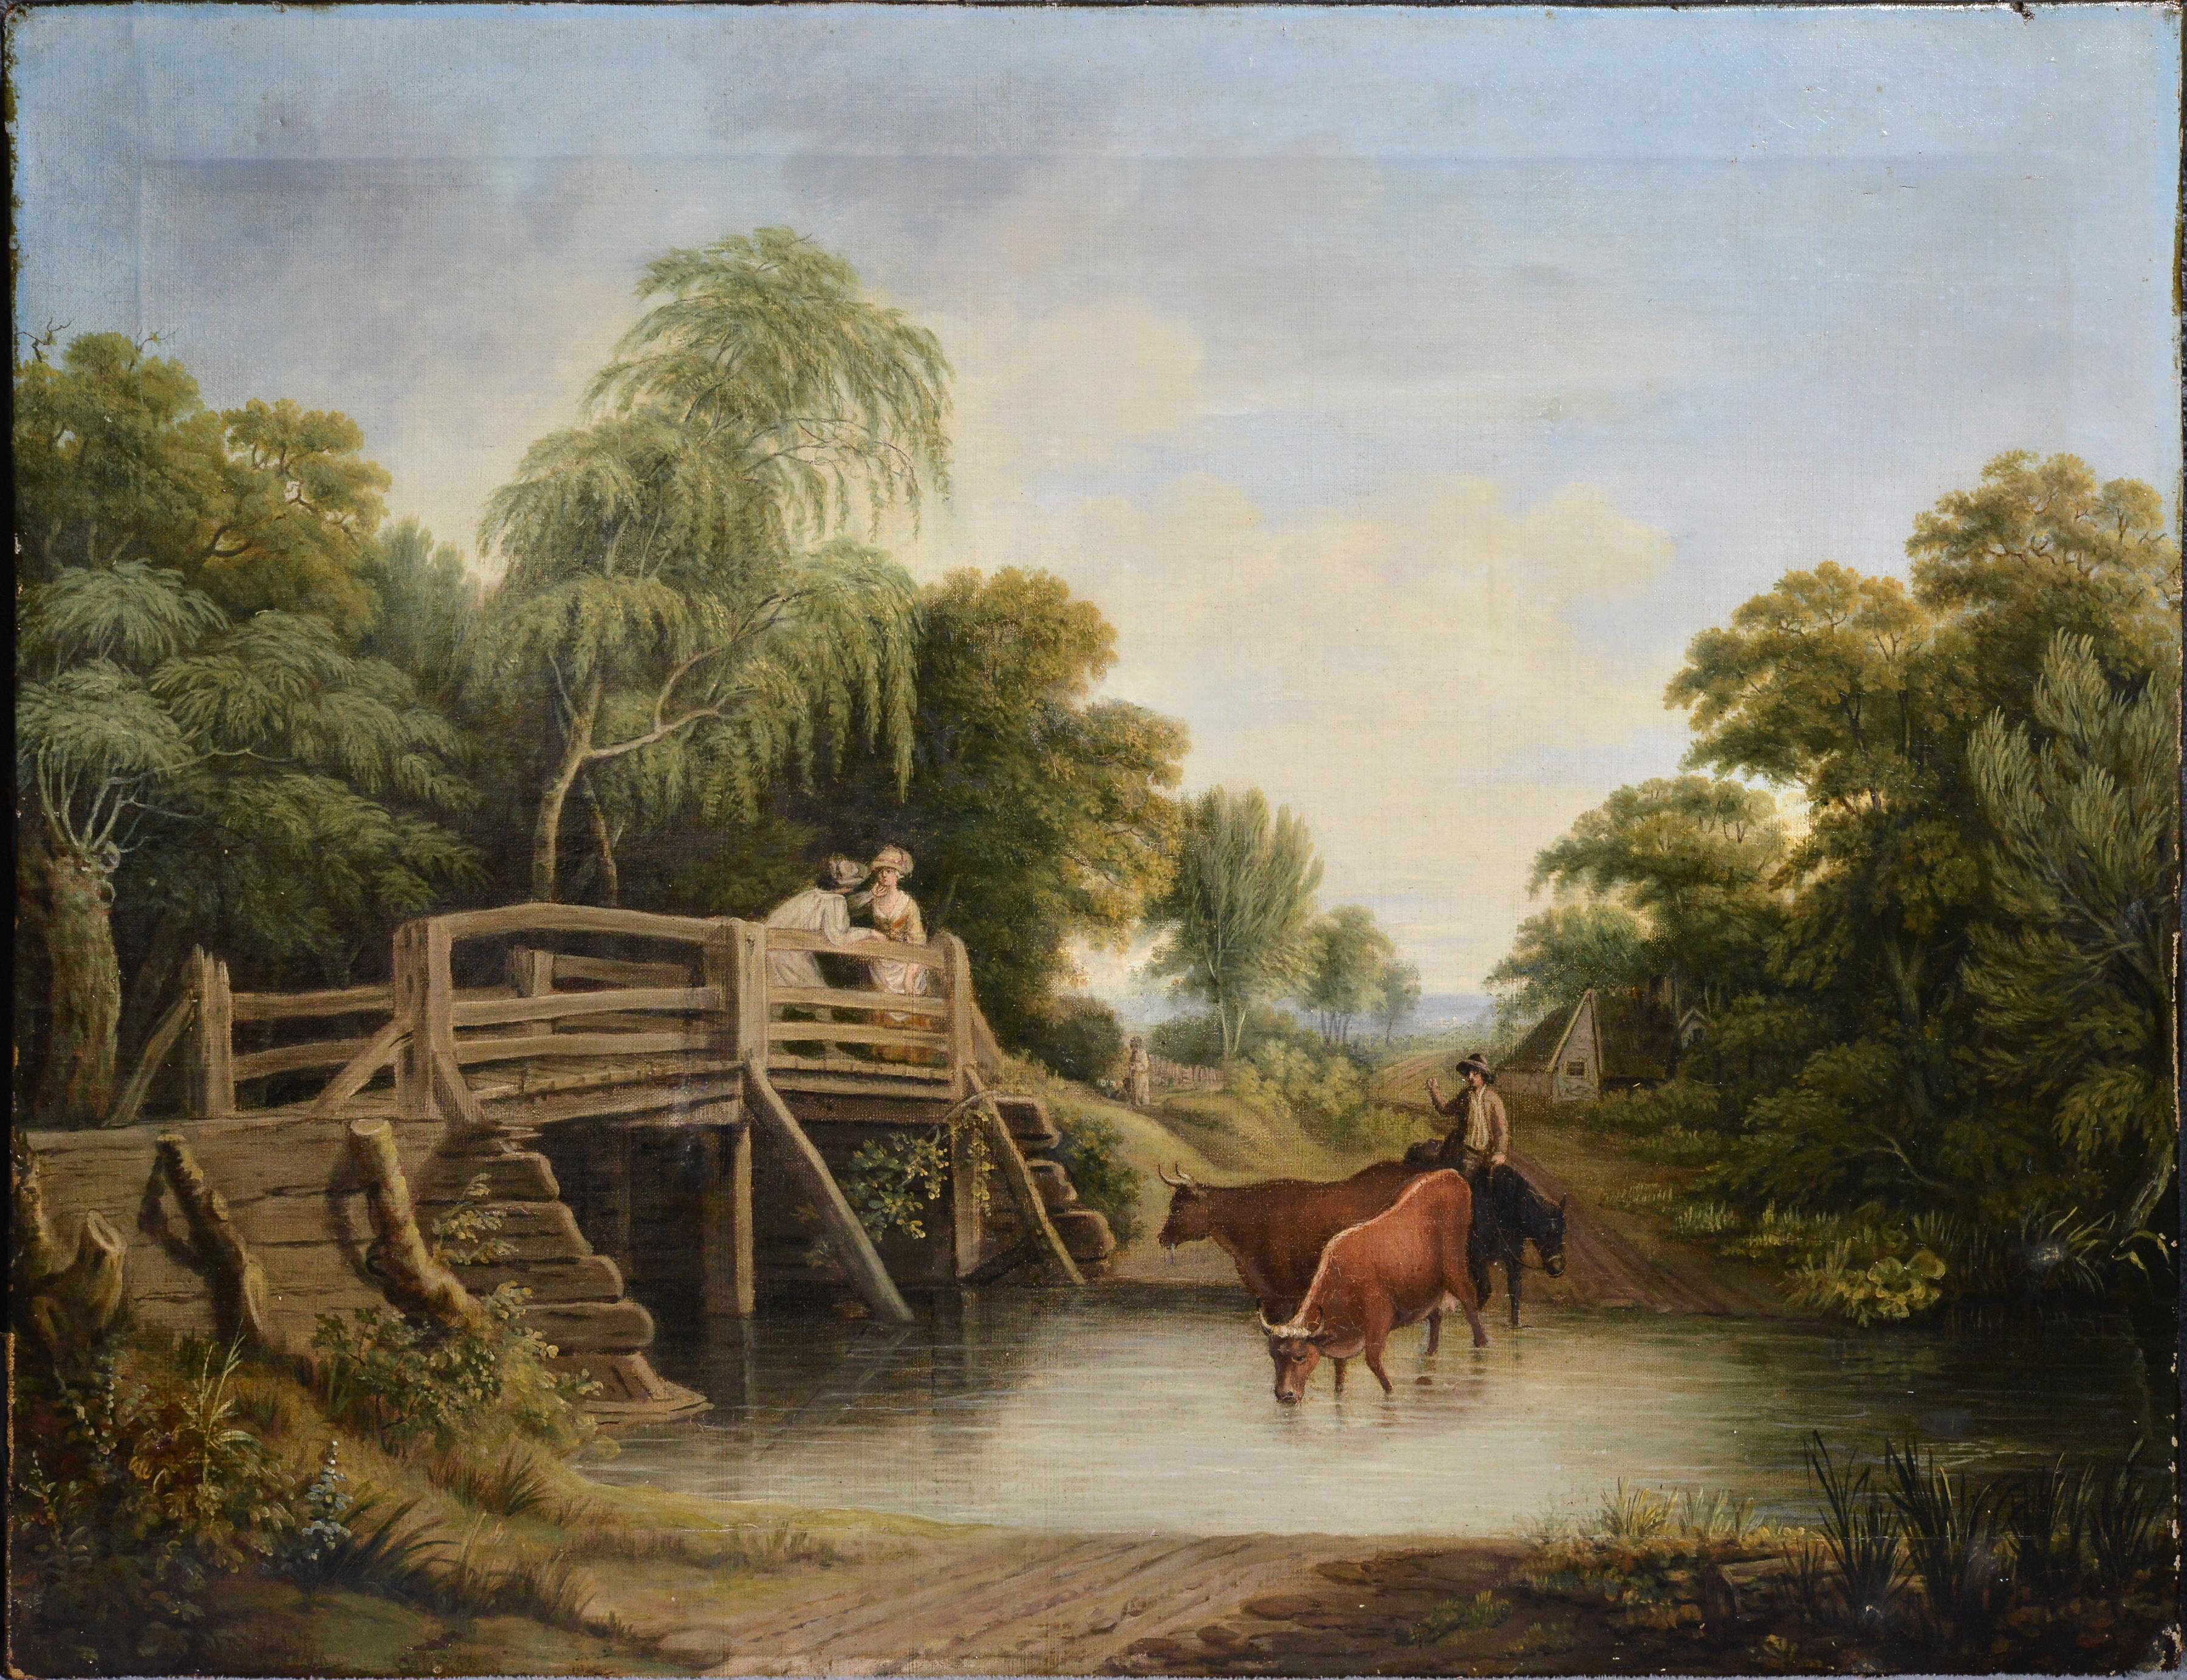 Pastoral Landscape Meeting on Bridge, Ölgemälde auf Leinwand, frühes 19. Jahrhundert